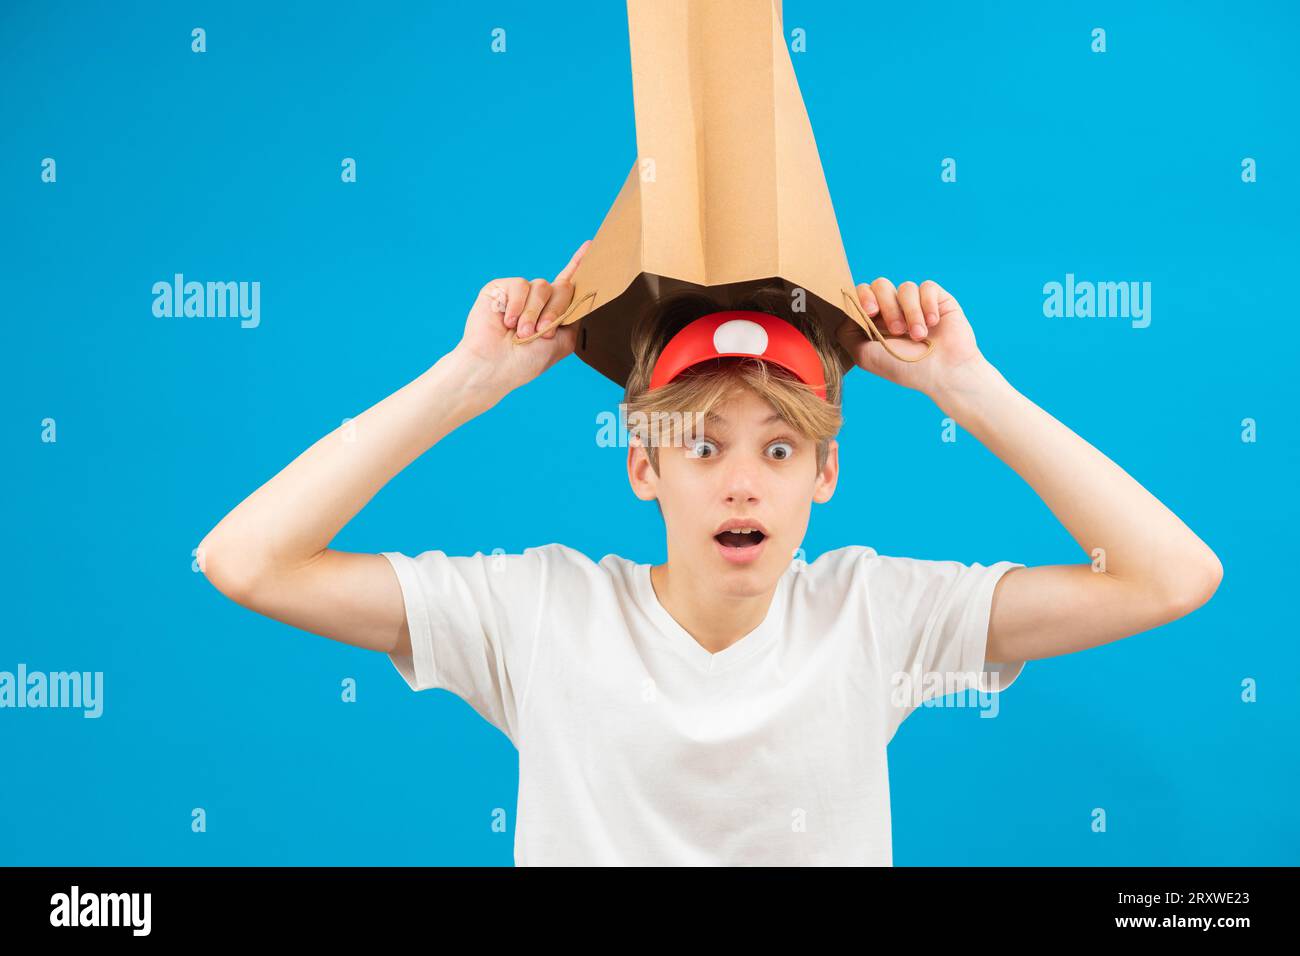 Garçon adolescent vendeur choqué avec sac en papier au-dessus de la tête. Adolescent tenant un sac en papier au-dessus de la tête posant en studio. Banque D'Images